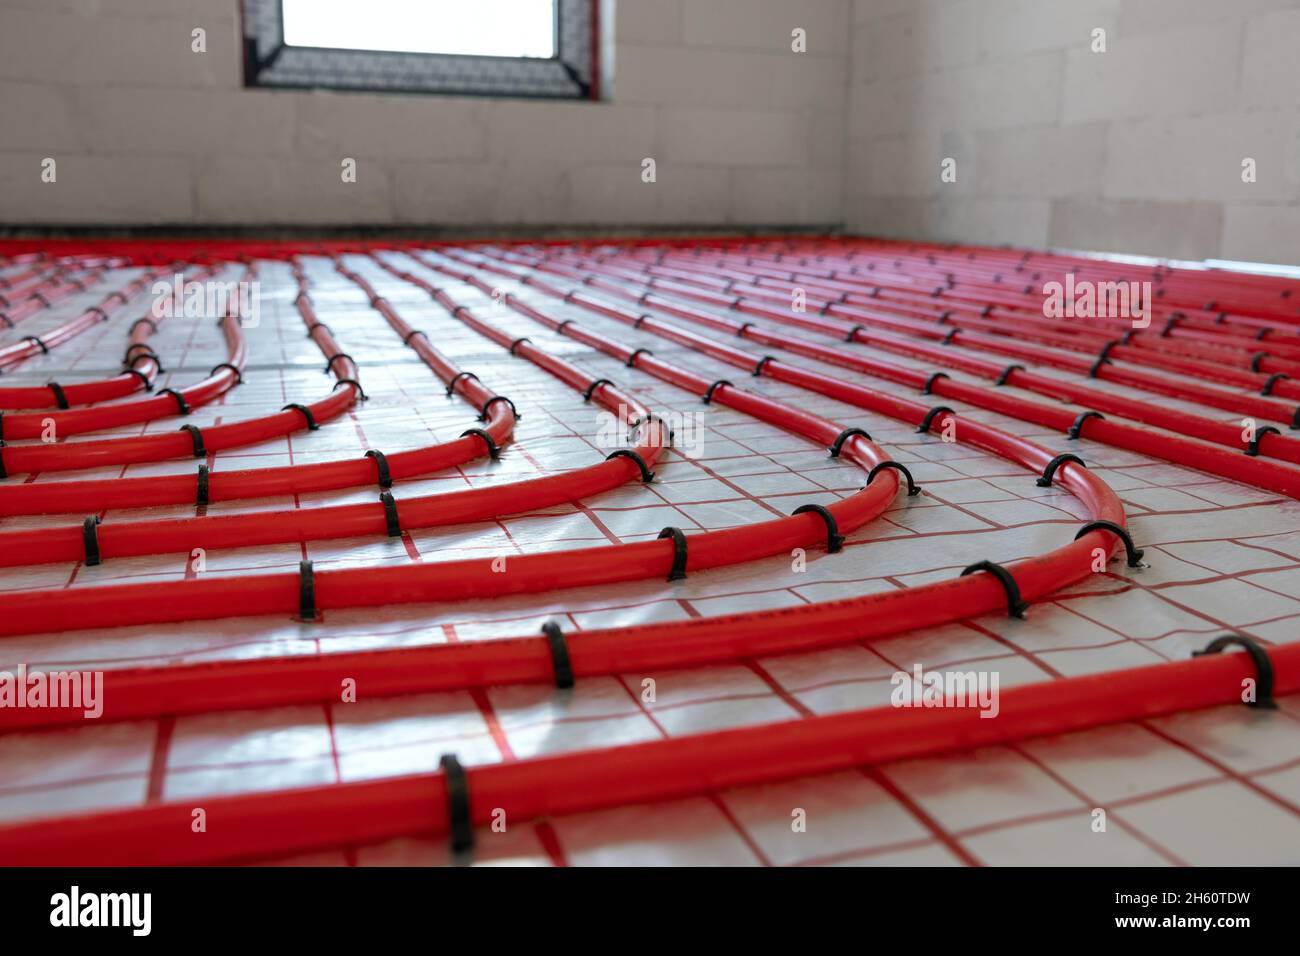 installation du système de chauffage au sol. tuyaux en plastique rouge Banque D'Images